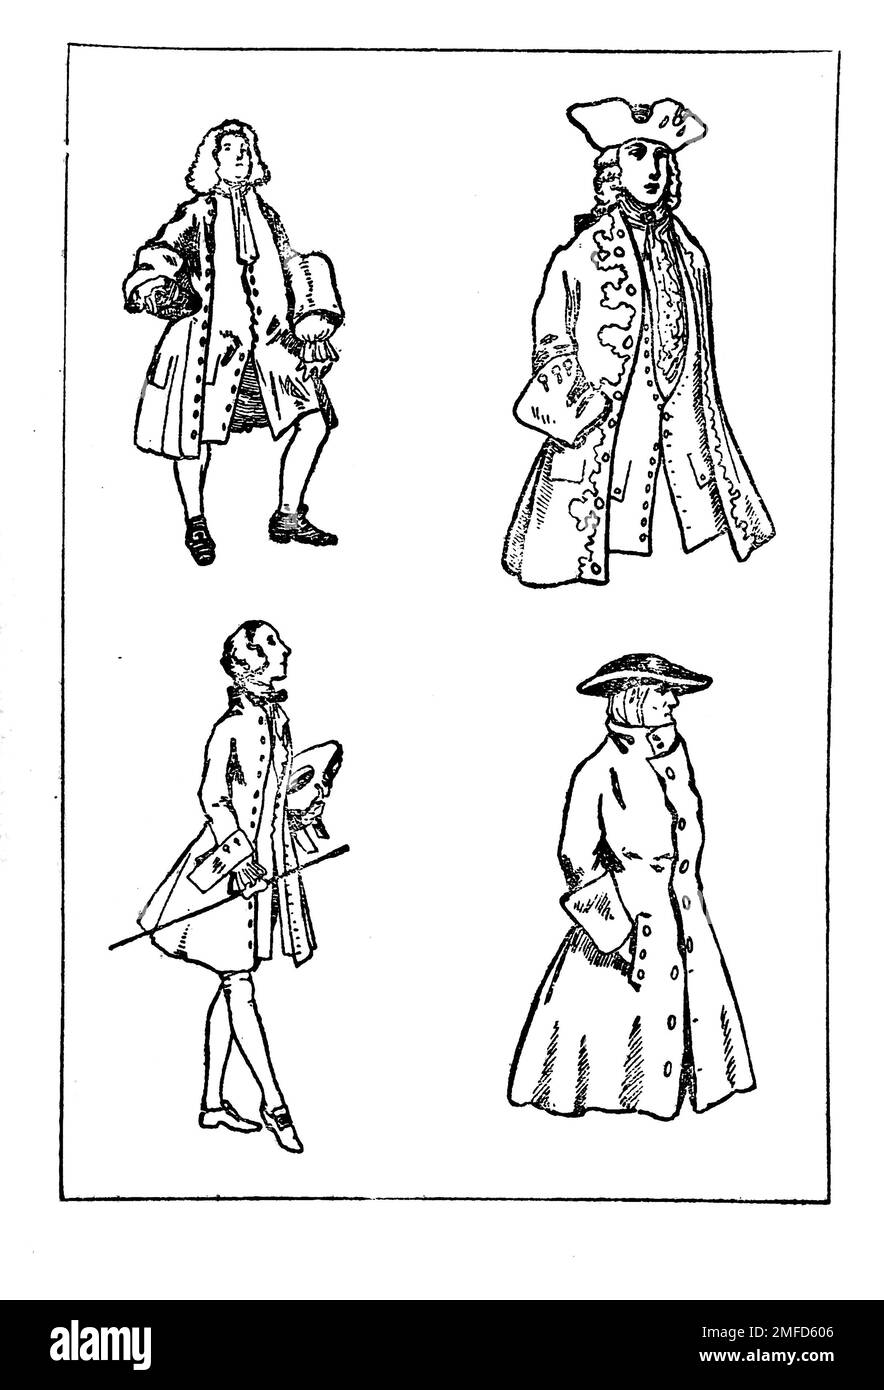 Strichzeichnung von Herrenbekleidung während der Herrschaft von George II aus dem Buch " English Costume " von Dion Clayton Calthrop, 1878-1937 Publikationsdatum 1907 Publisher London, A. & C. Black Stockfoto